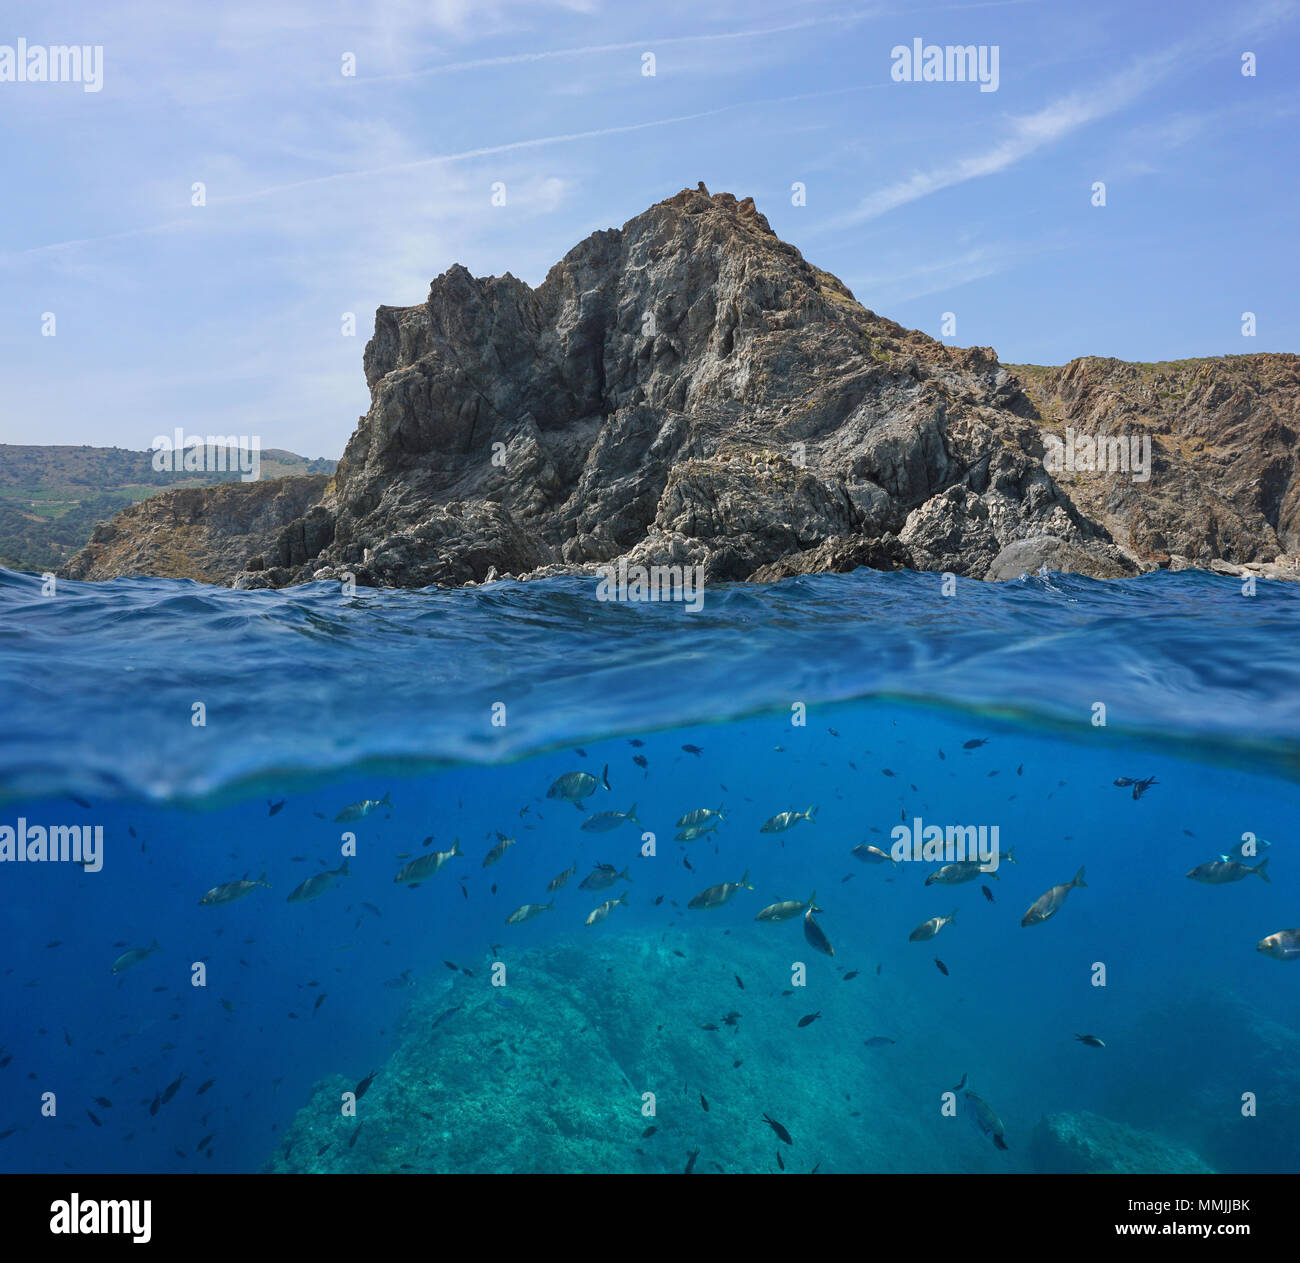 Côte Rocheuse avec un banc de poissons sous l'eau, vue fractionnée au-dessus et au-dessous de la surface de l'eau, mer Méditerranée, réserve marine de Cerbère Banyuls, France Banque D'Images